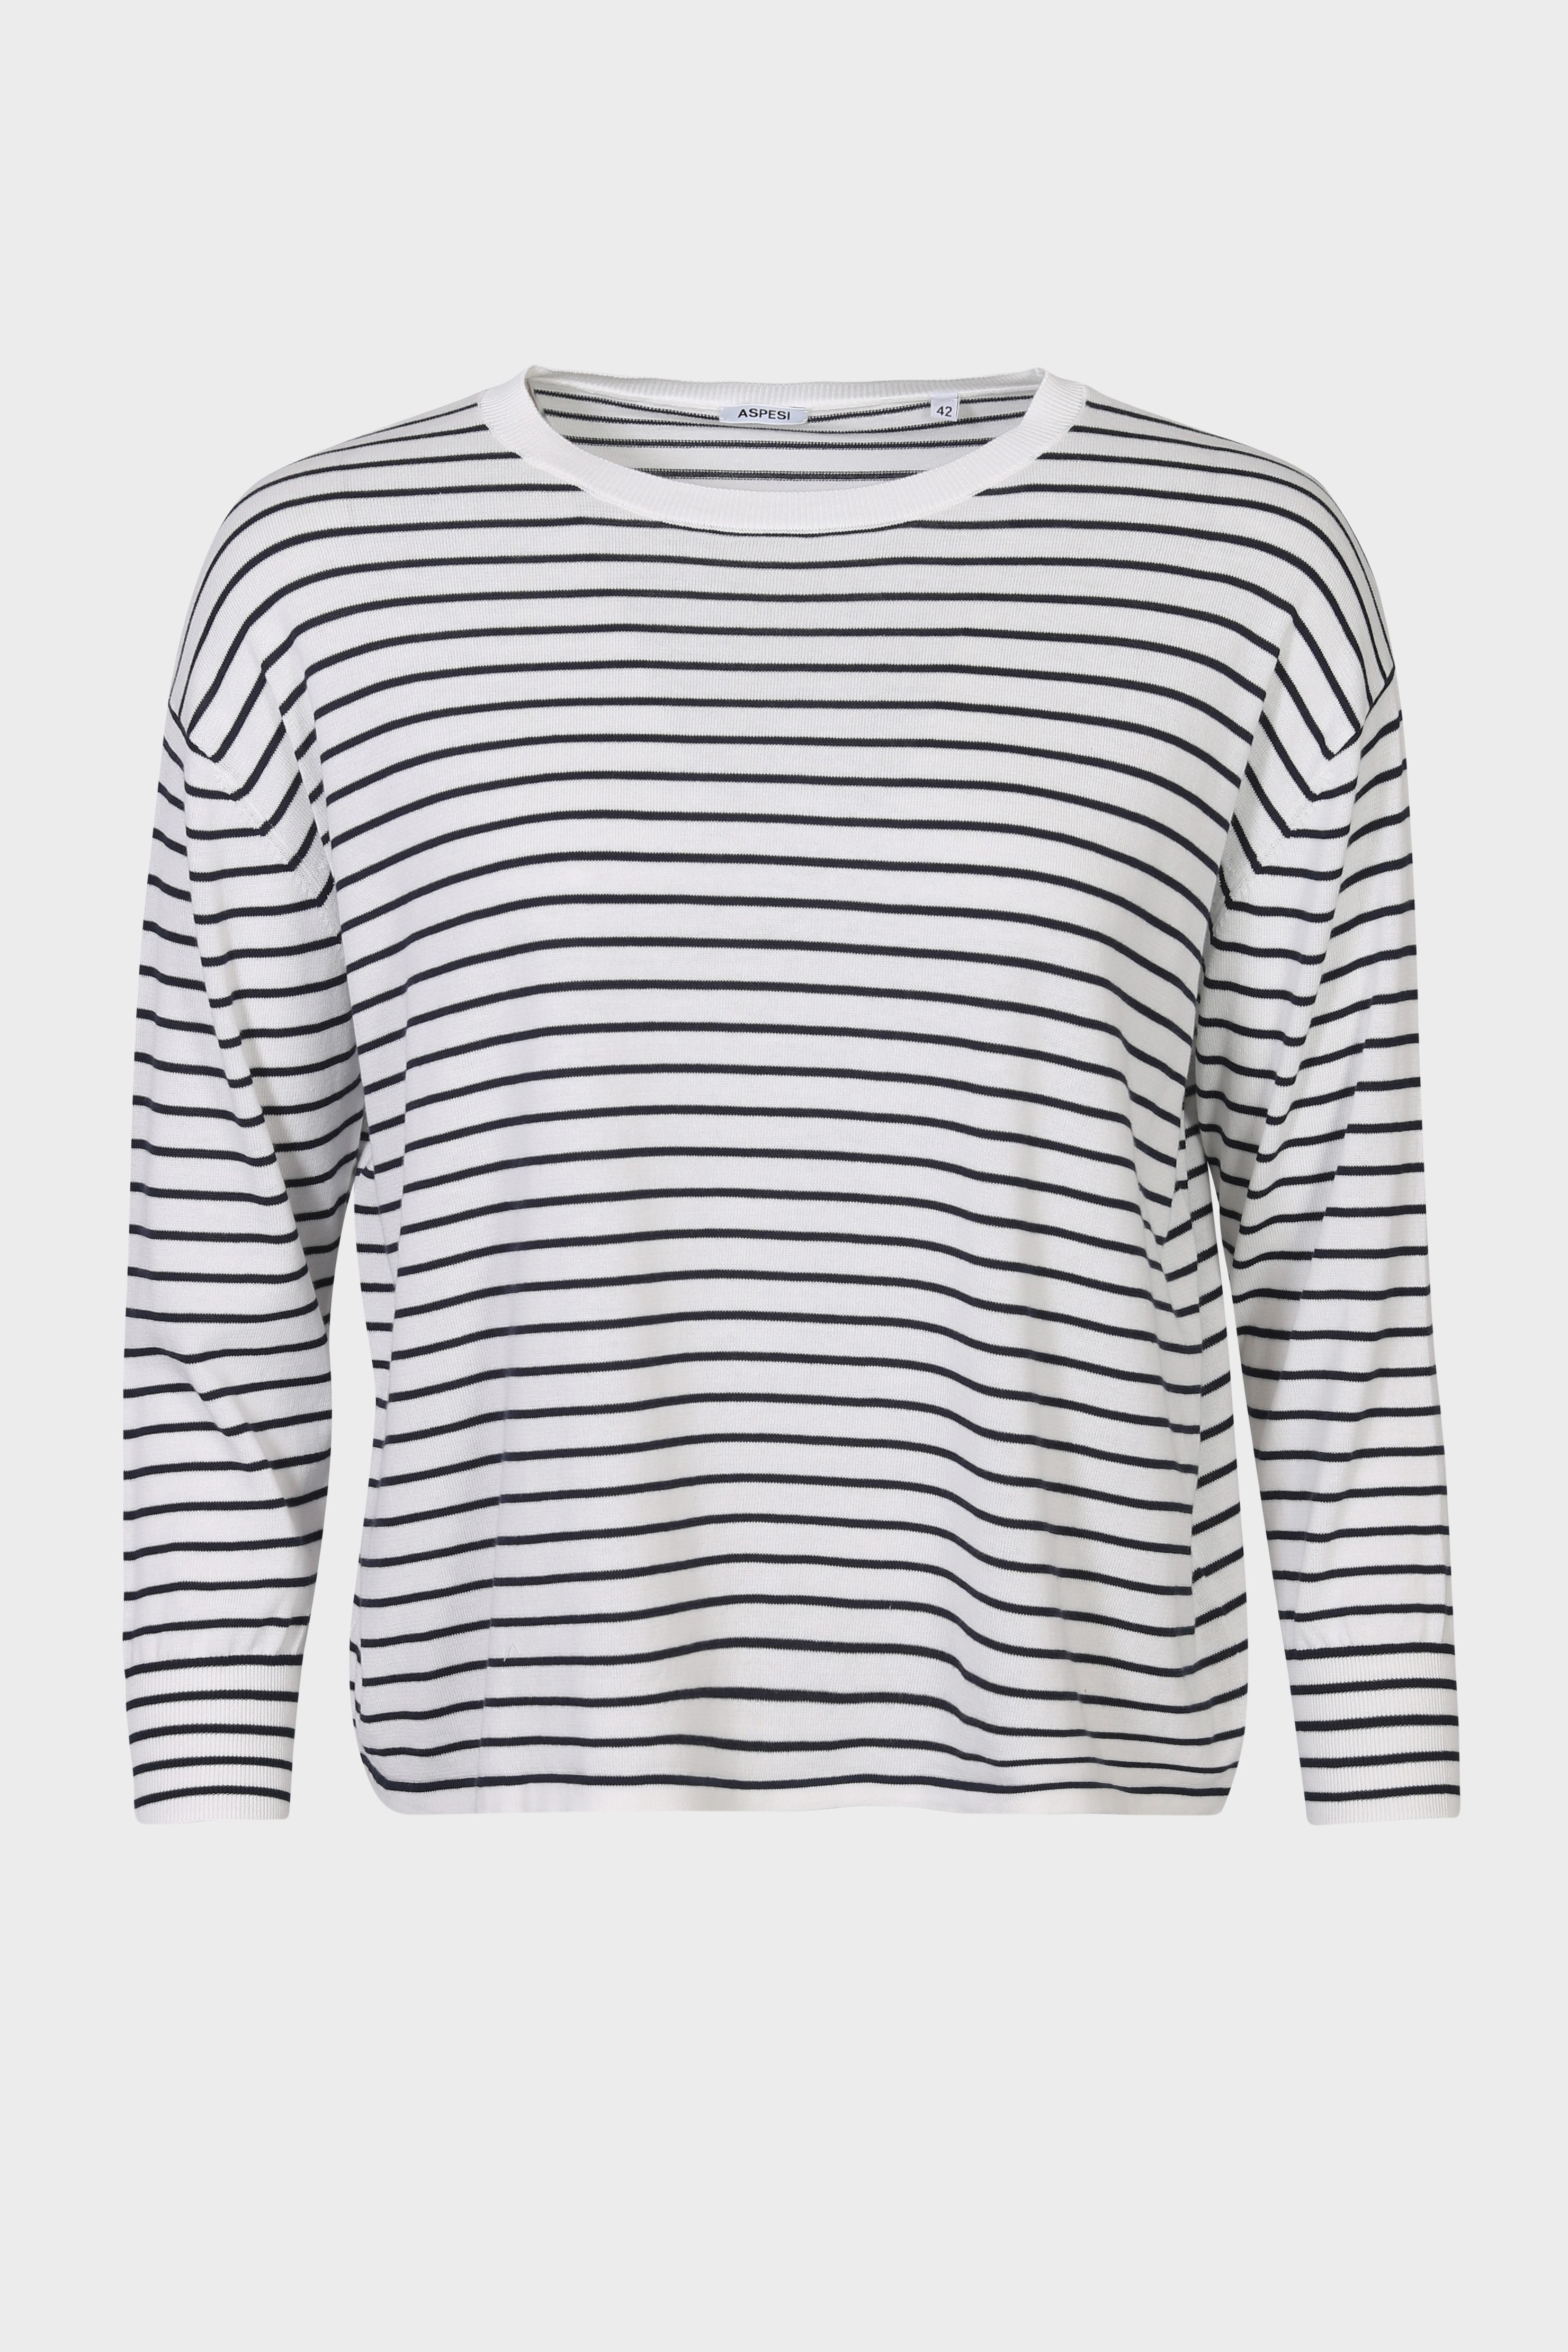 ASPESI Striped Cotton Sweater White/Navy